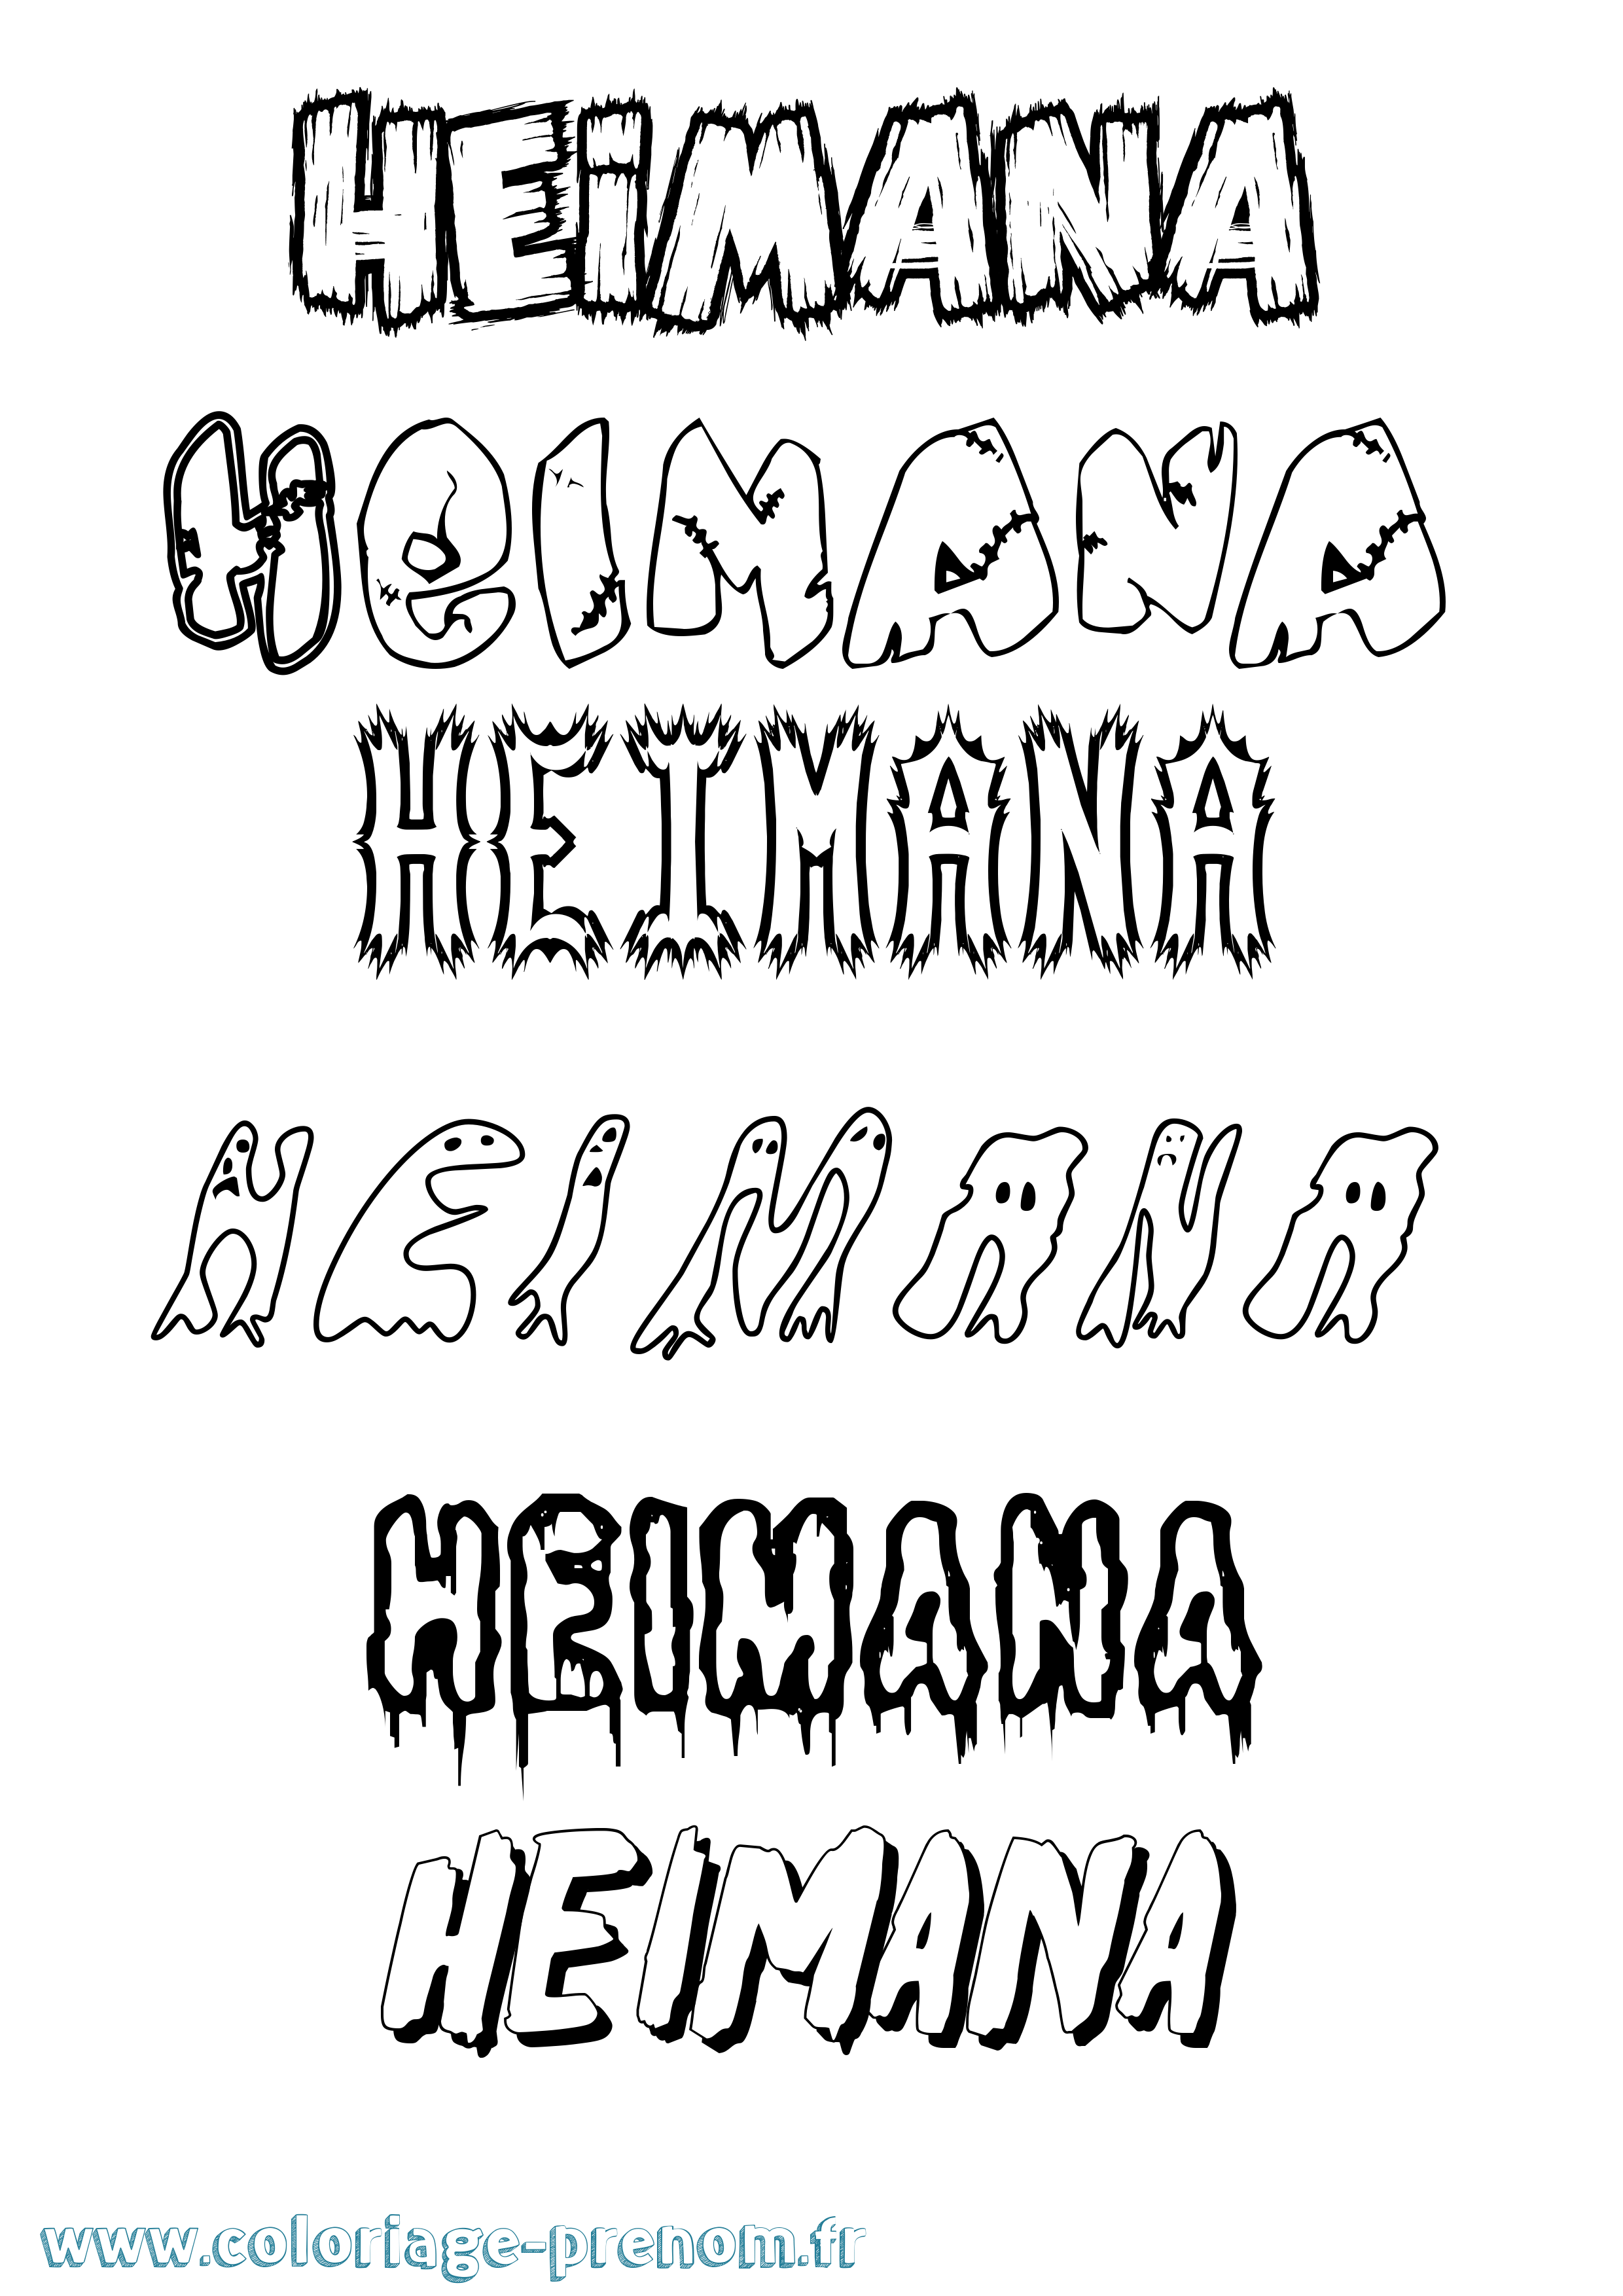 Coloriage prénom Heimana Frisson